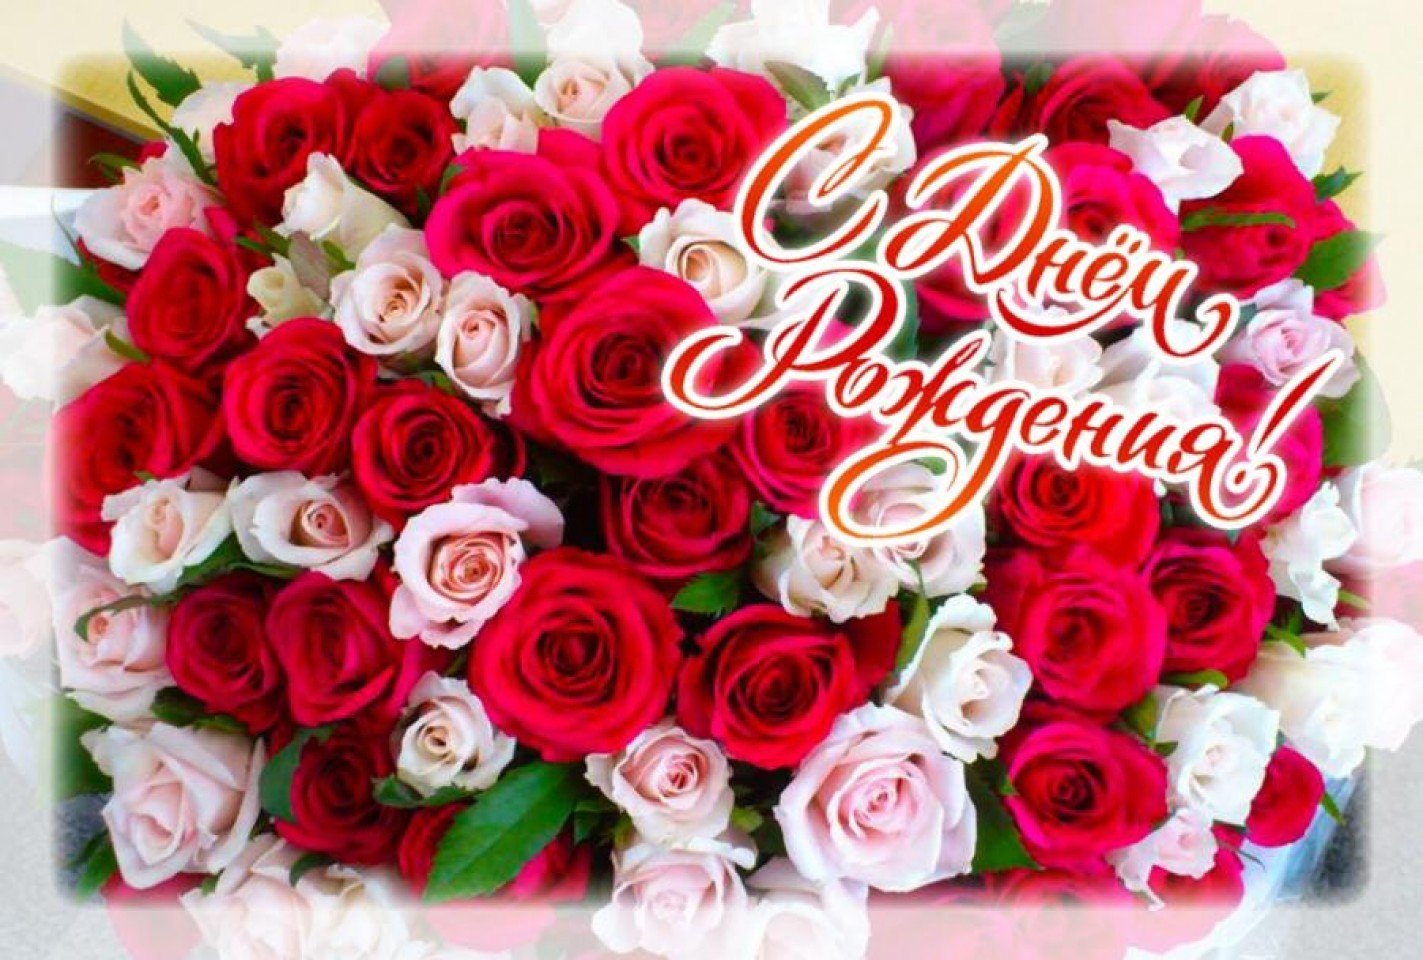 Открв. Цветы поздравления. Букет роз с днем рождения. Красивый букет цветов с днем рождения. С днем рождения открытки с цветами.